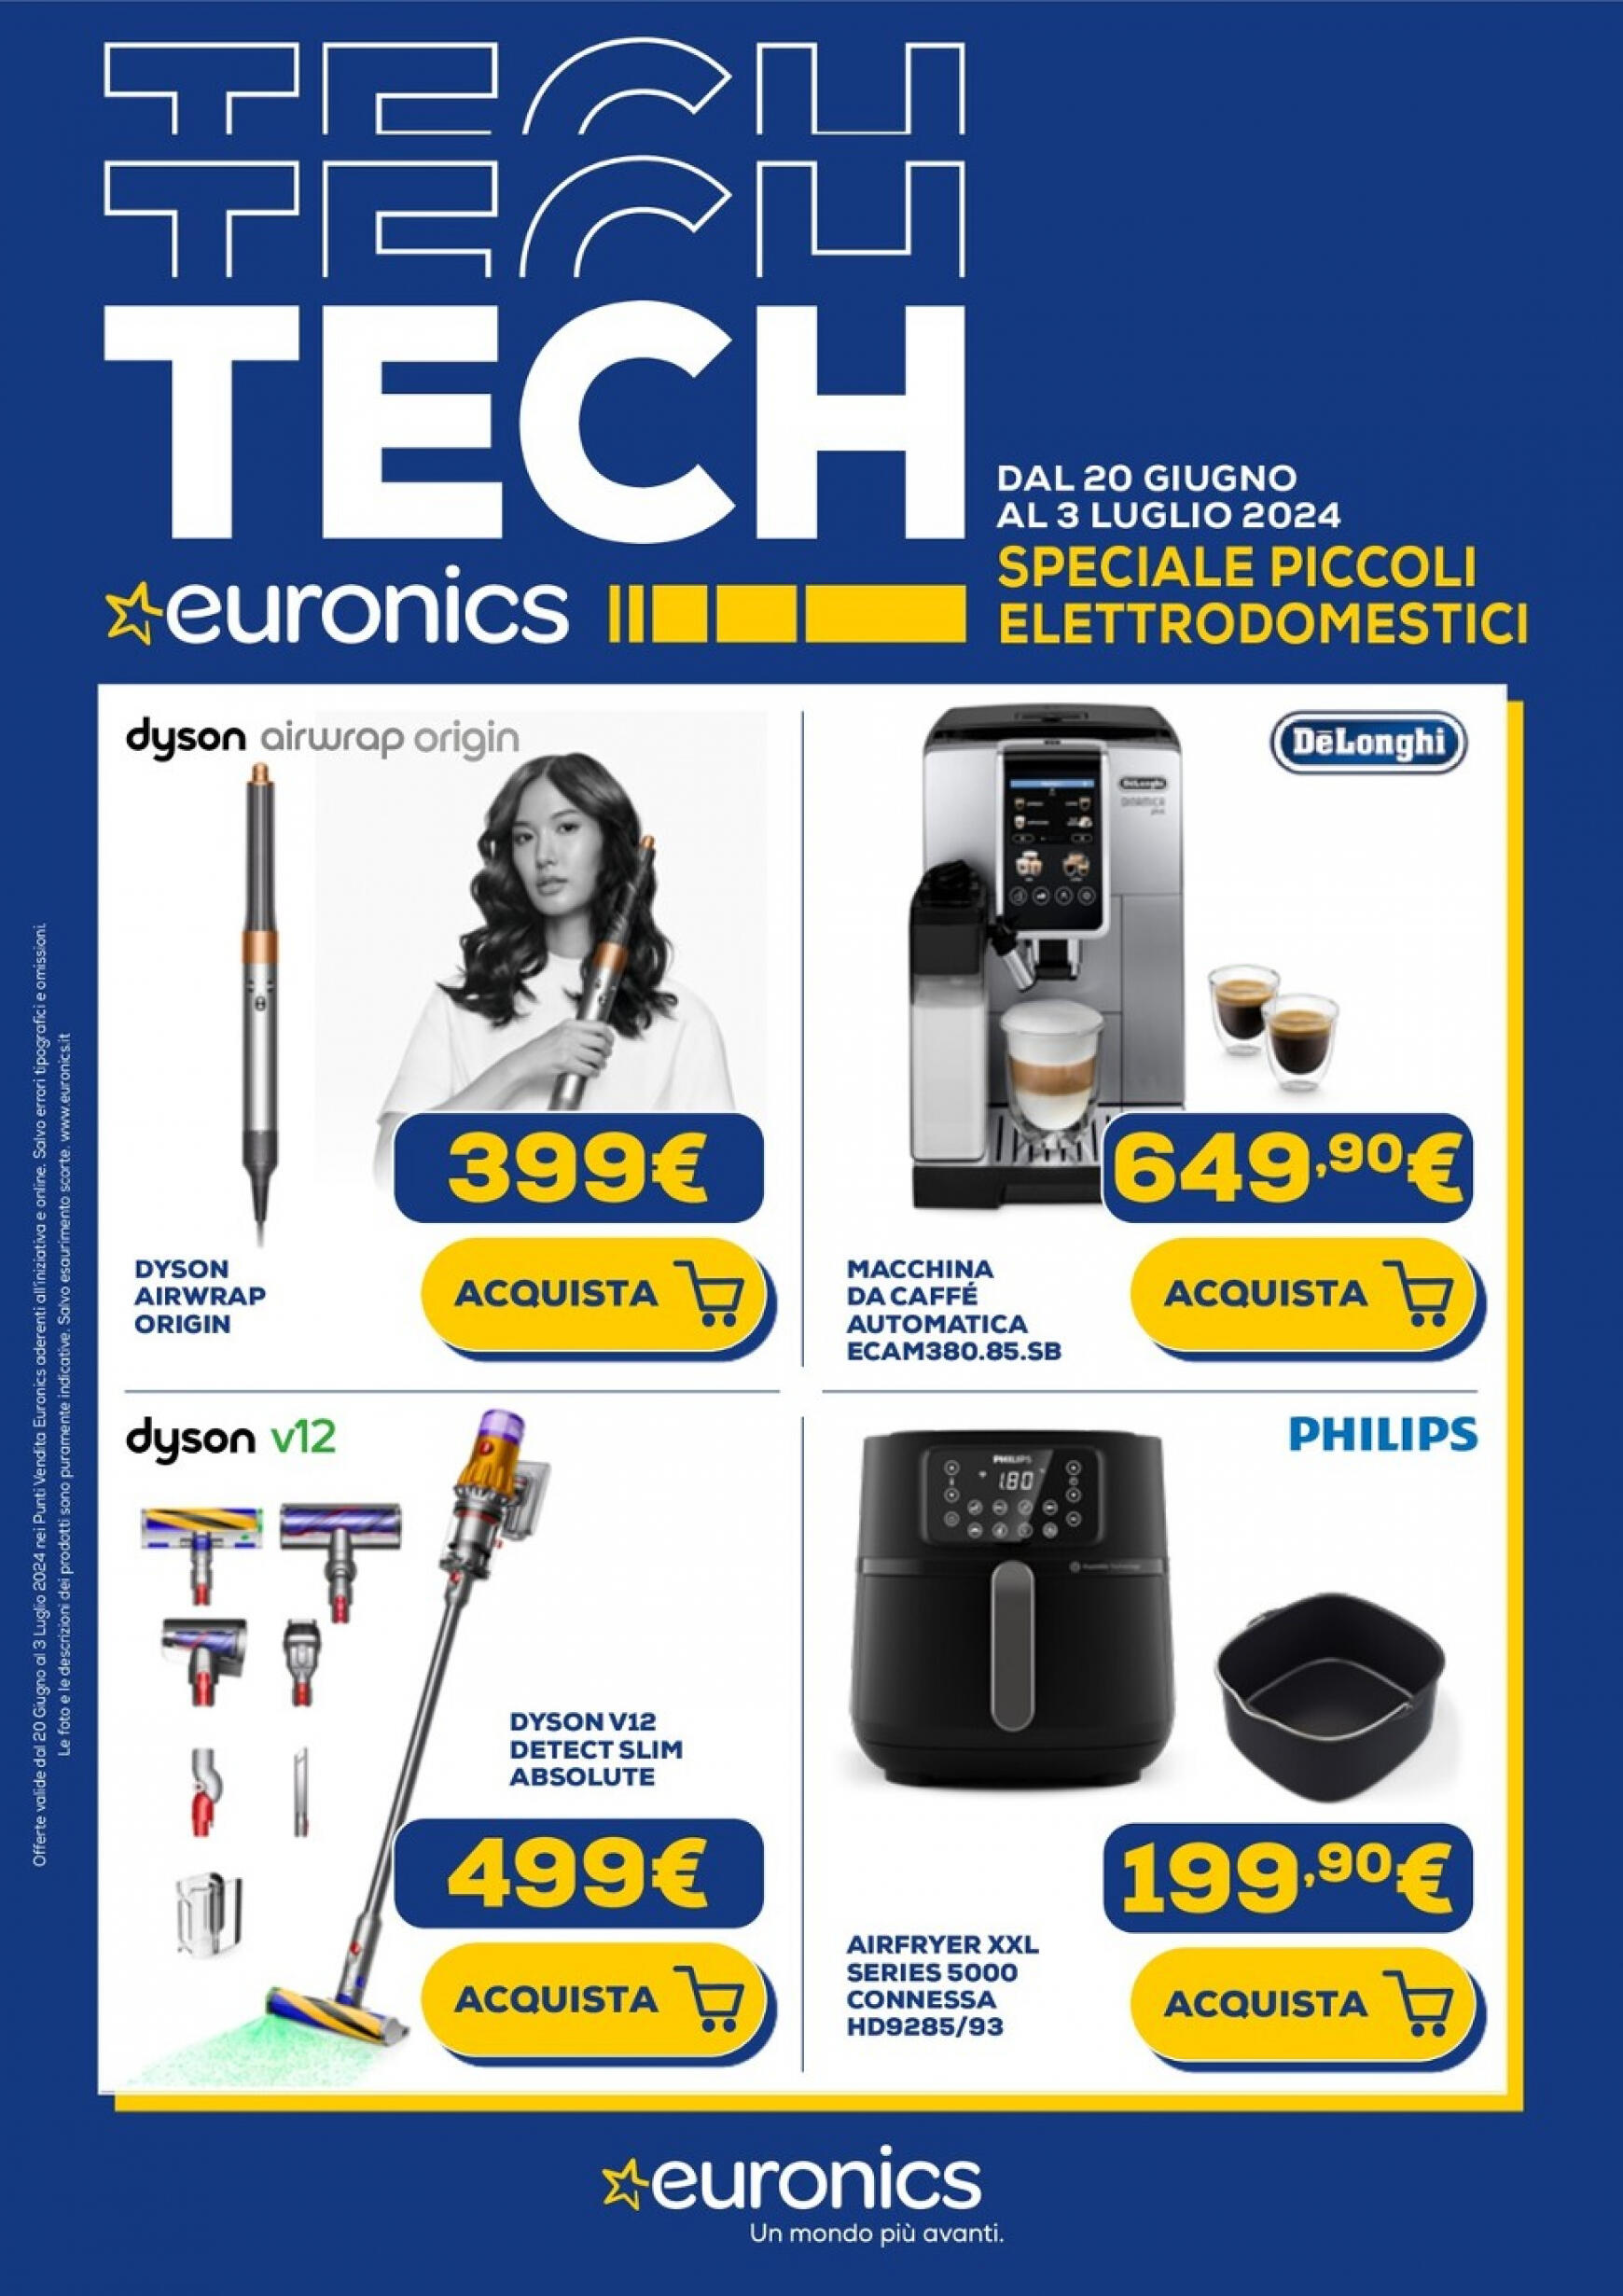 euronics - Nuovo volantino Euronics - Speciale Piccoli Elettrodomestici 20.06. - 03.07.